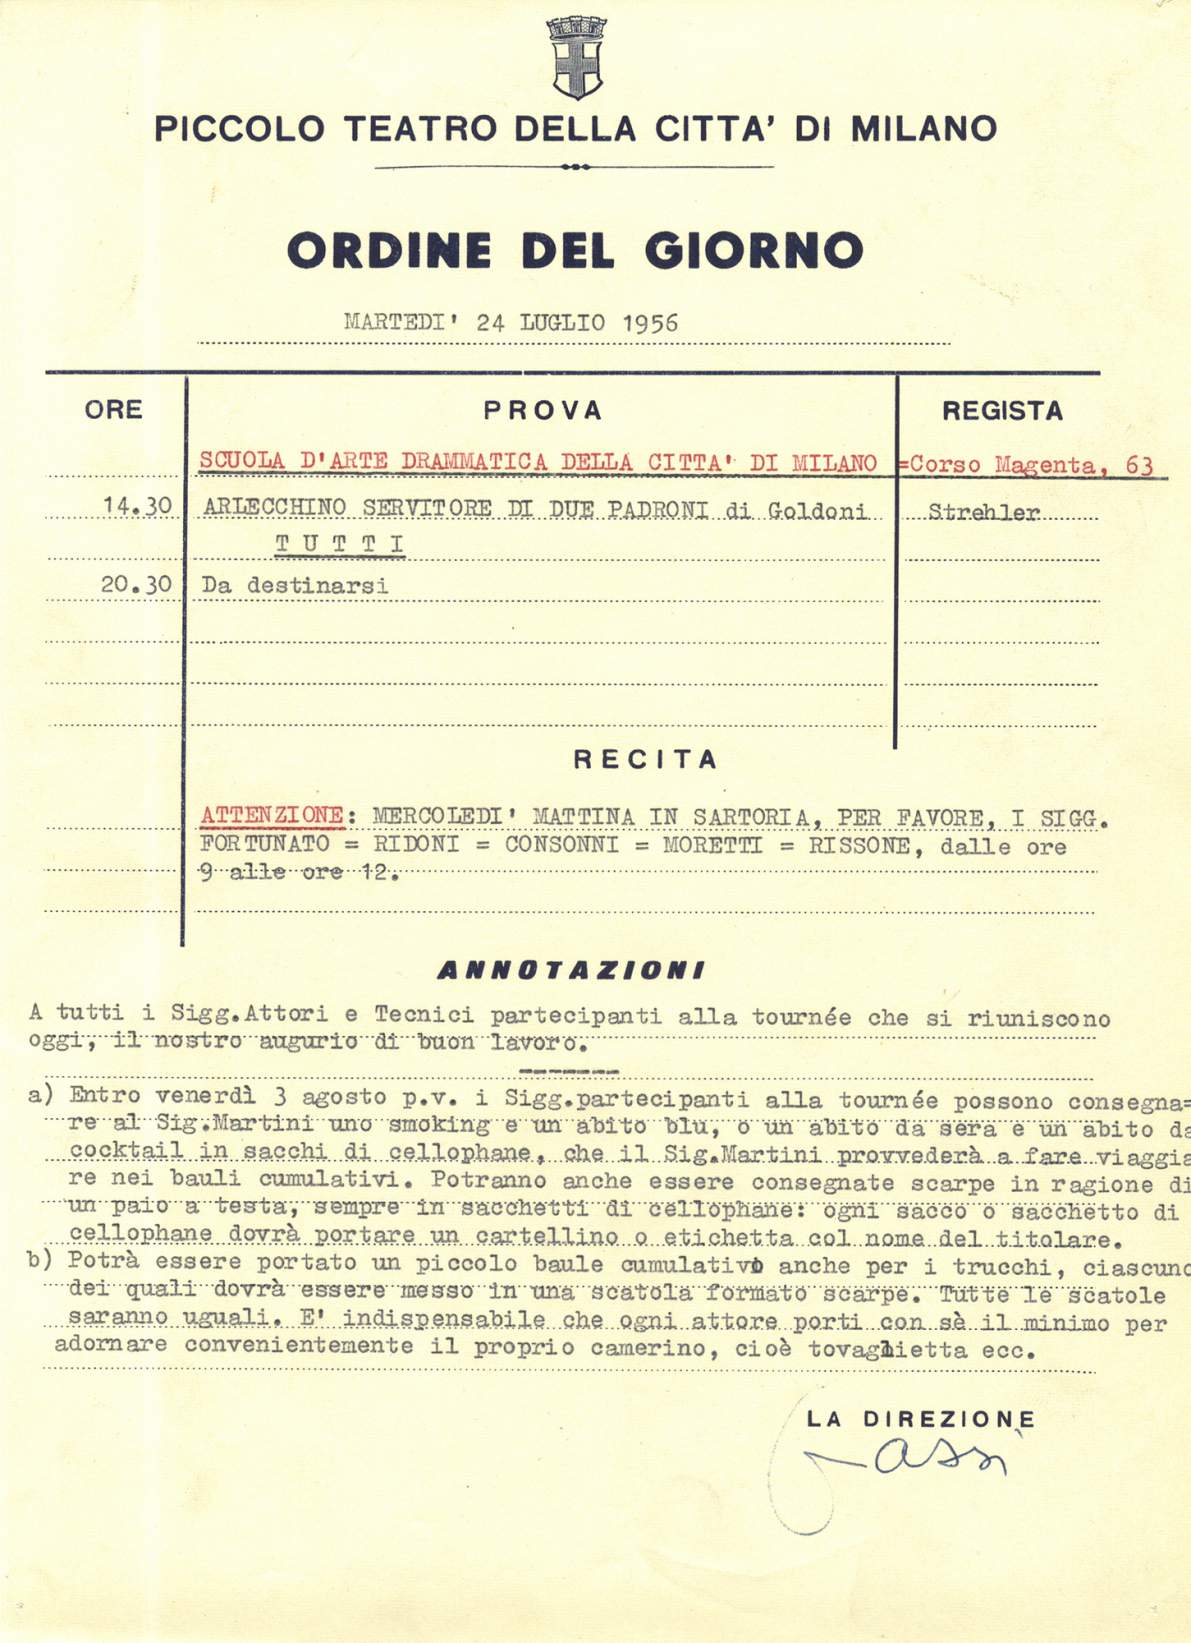 24 luglio 1956: indicazioni alla compagnia prima di partire per la tournée - Archivio Piccolo Teatro di Milano 